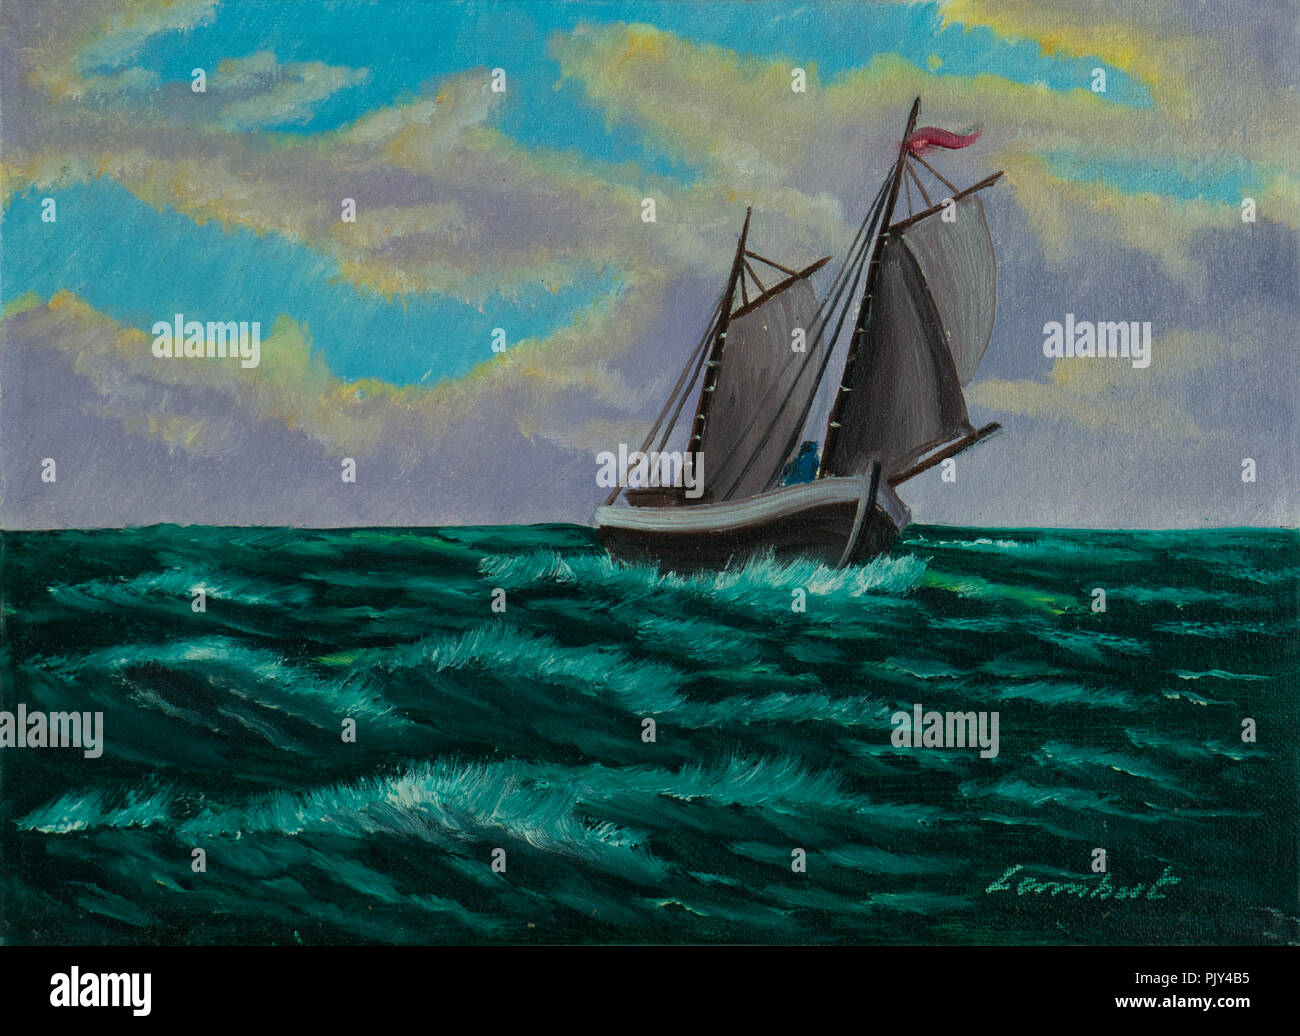 Peinture à l'huile - bateau à voile dans l'eau bleu-vert avec des ondes de lumière Banque D'Images